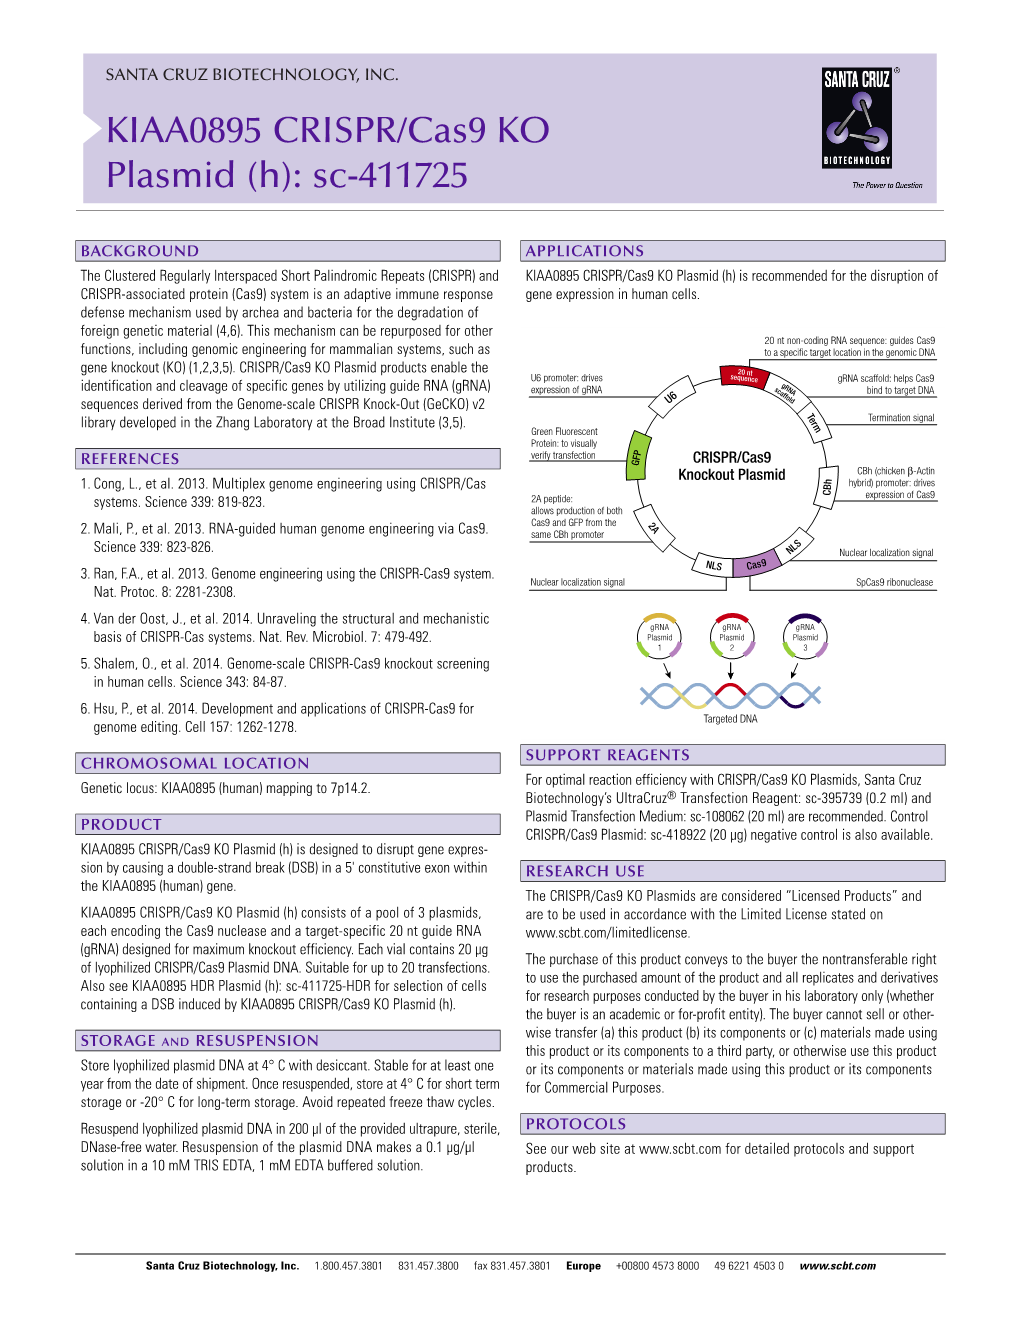 KIAA0895 CRISPR/Cas9 KO Plasmid (H): Sc-411725